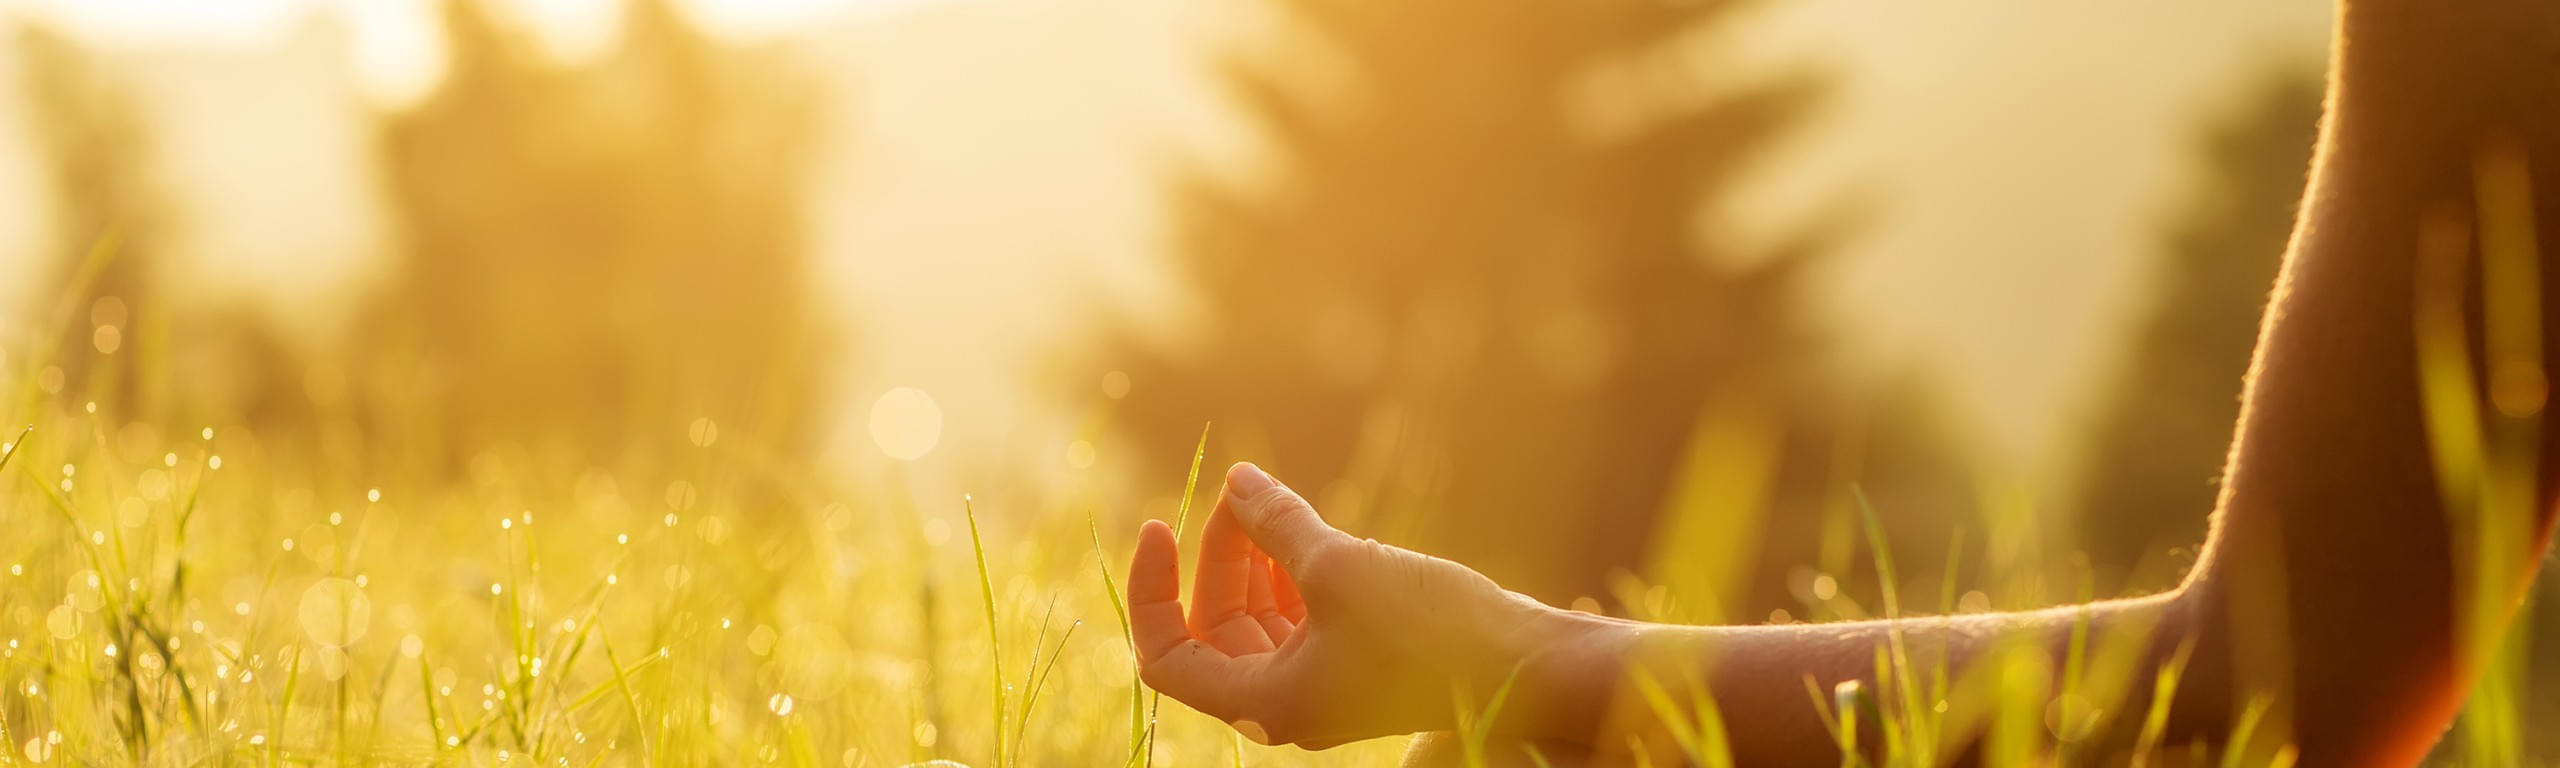 Yoga & Meditations Retreat – Zum Wahren Selbst durch Achtsamkeit im Moment 